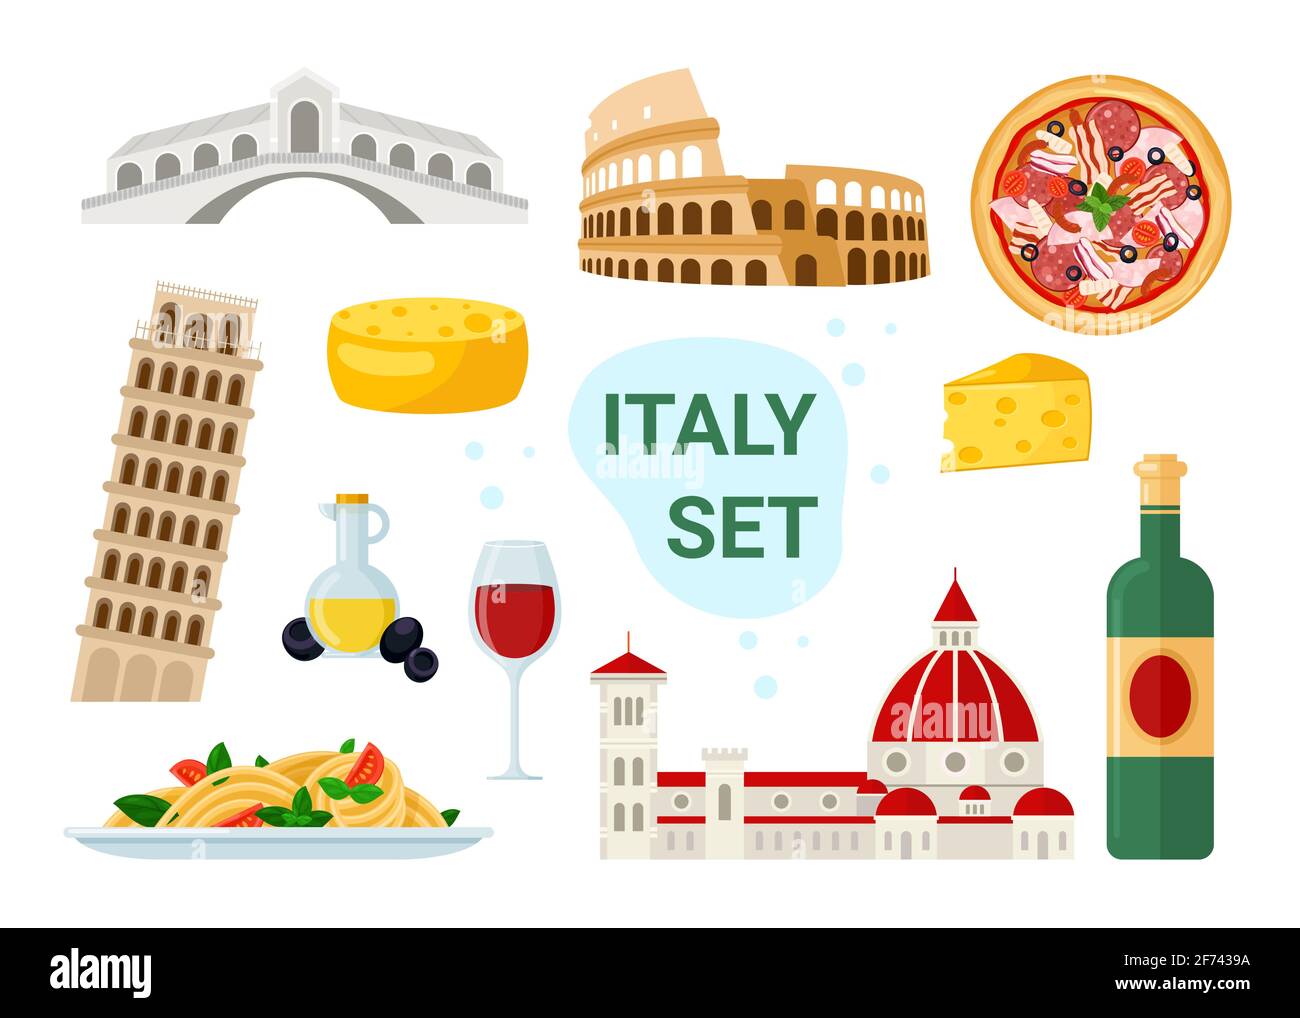 Italia turismo con el famoso menú de comida y bebida italiana, antiguo punto de referencia de los viajes Ilustración del Vector